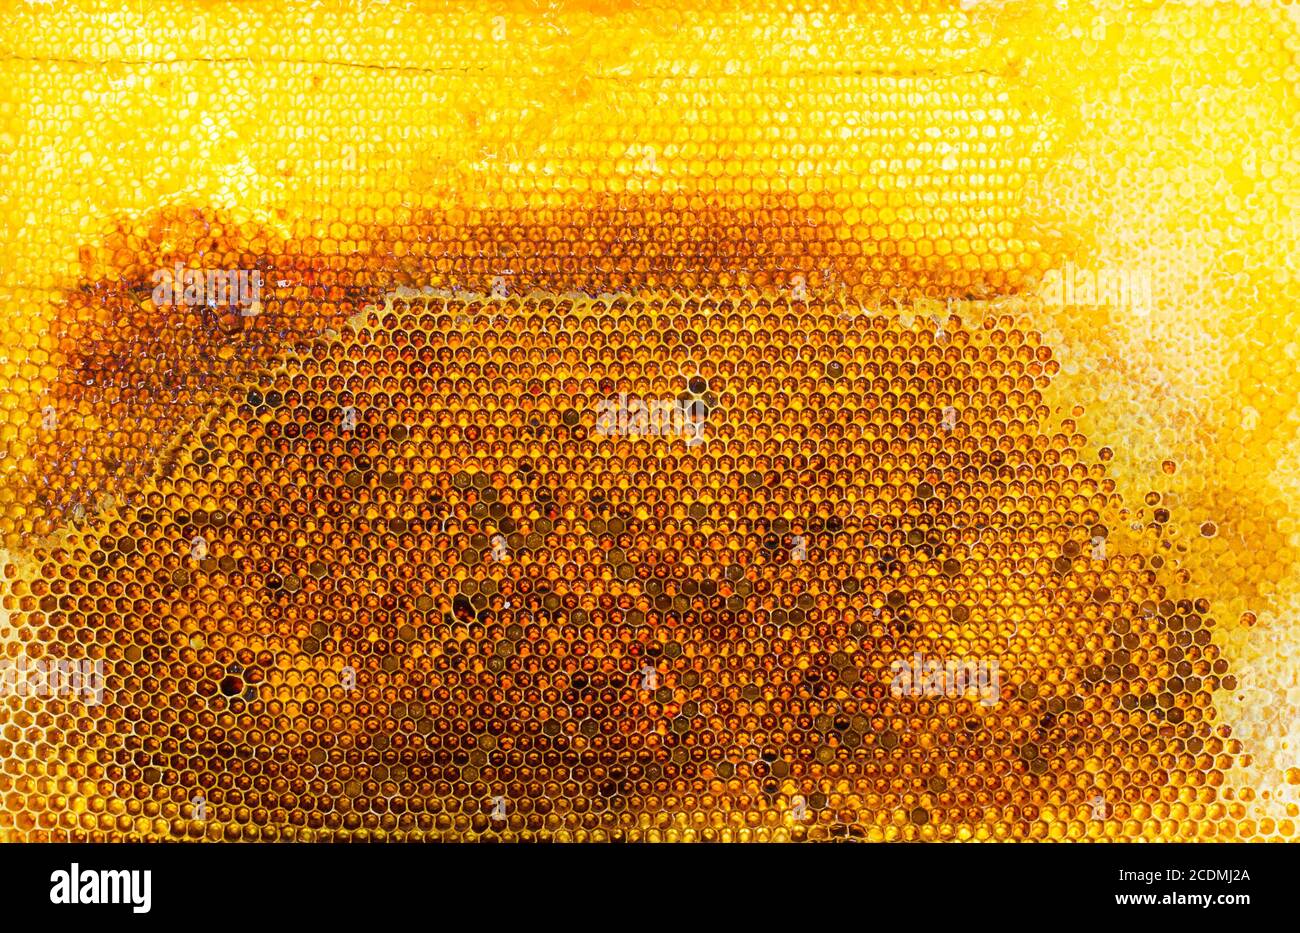 marco de panales de miel, primer plano Foto de stock